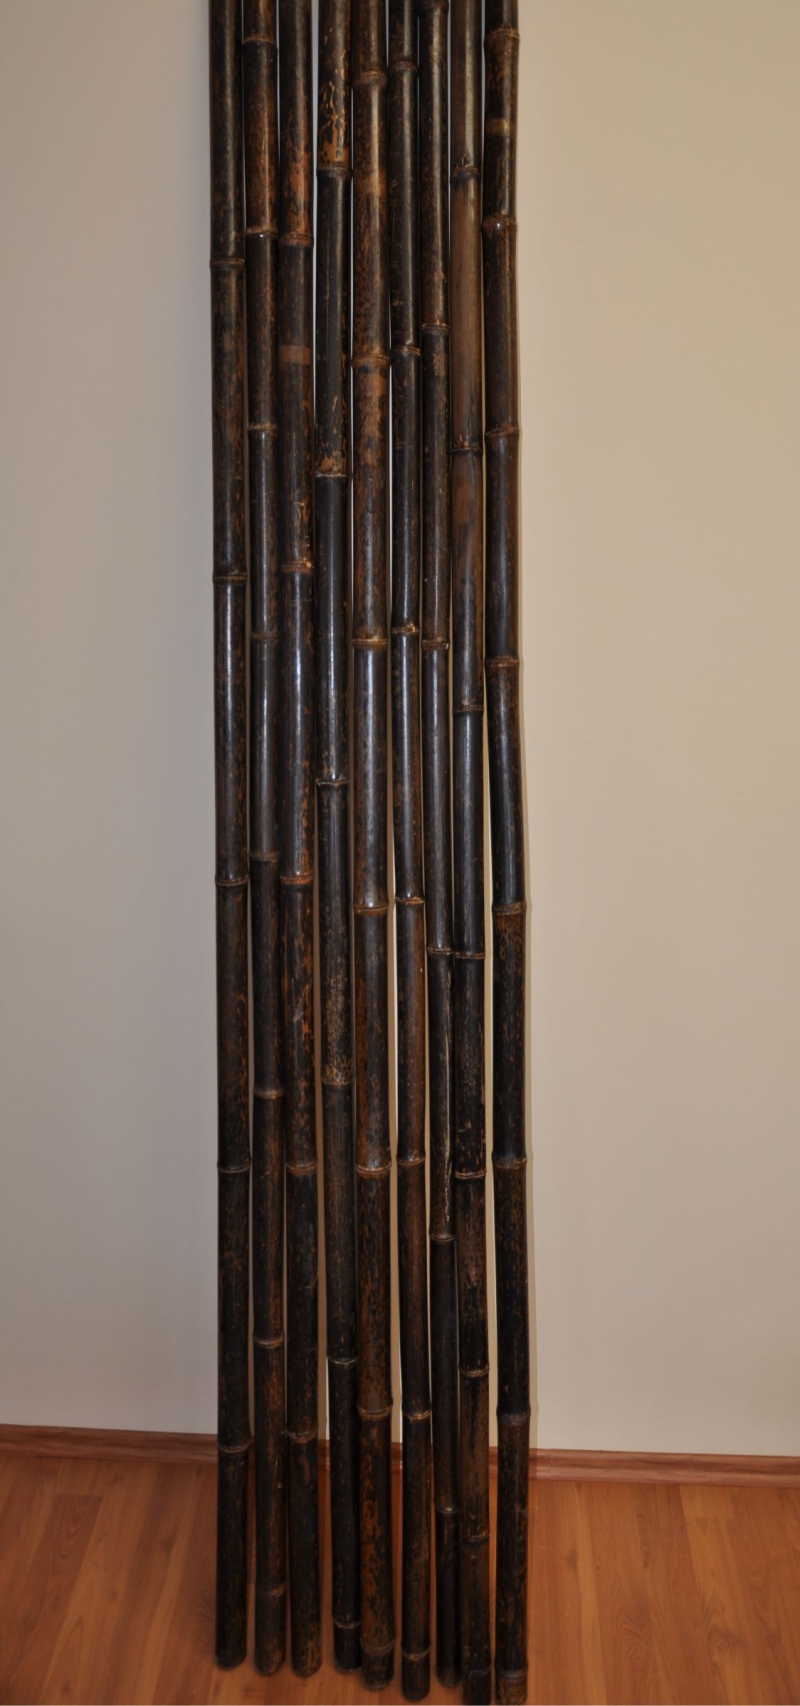 Bambusová tyč 3-4 cm, délka 4 metry, bambus black - podélně prasklá